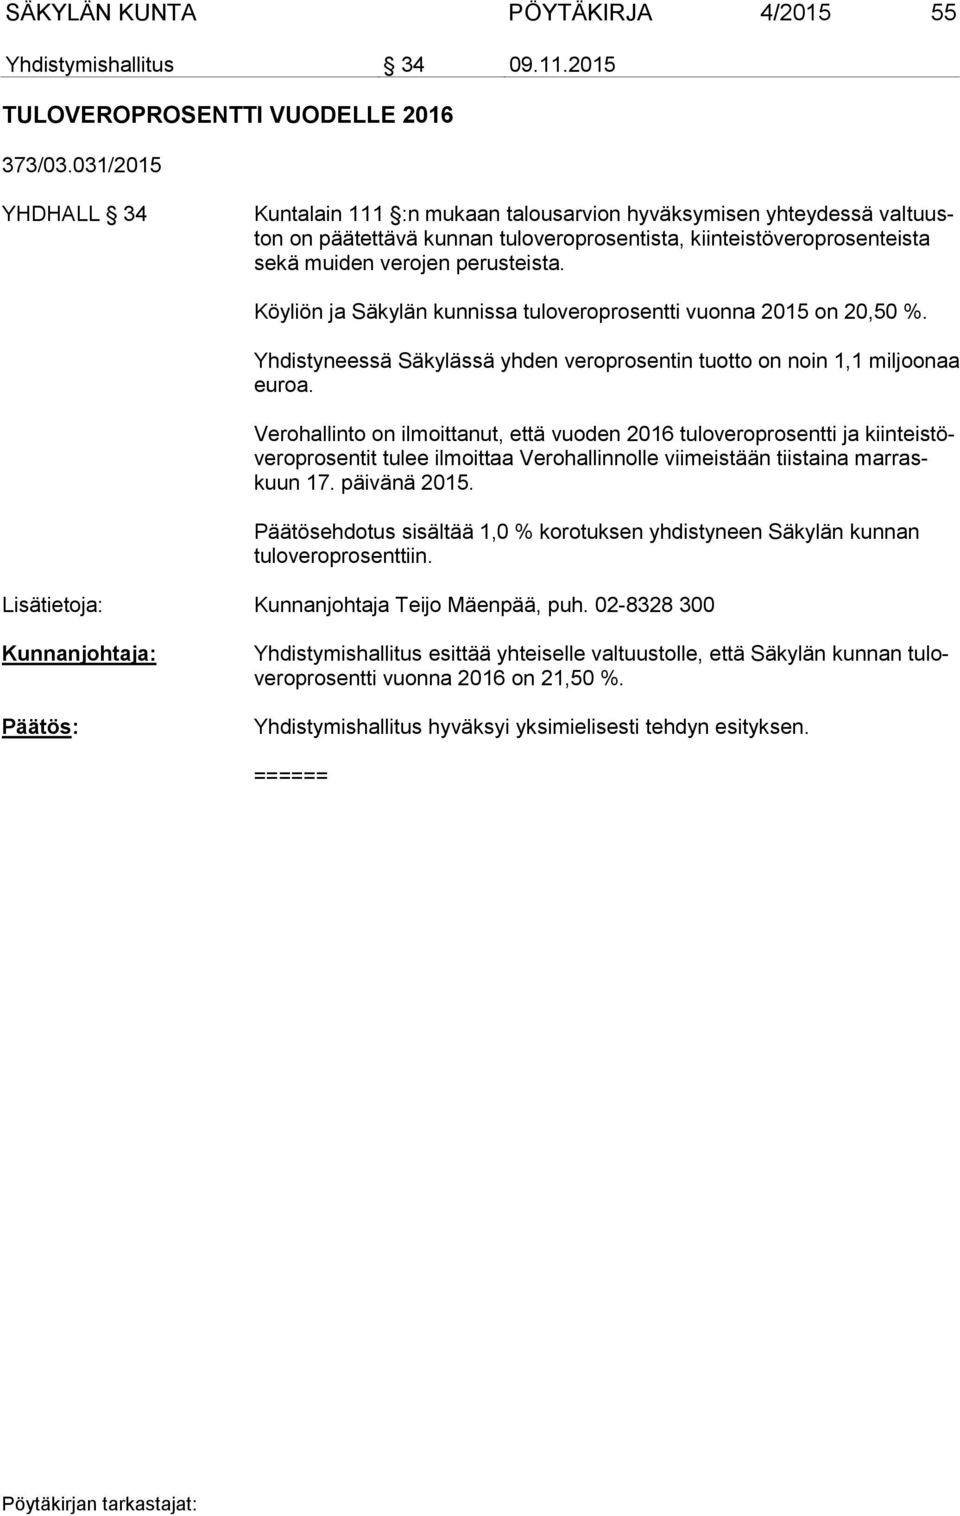 Köyliön ja Säkylän kunnissa tuloveroprosentti vuonna 2015 on 20,50 %. Yhdistyneessä Säkylässä yhden veroprosentin tuotto on noin 1,1 miljoonaa euroa.